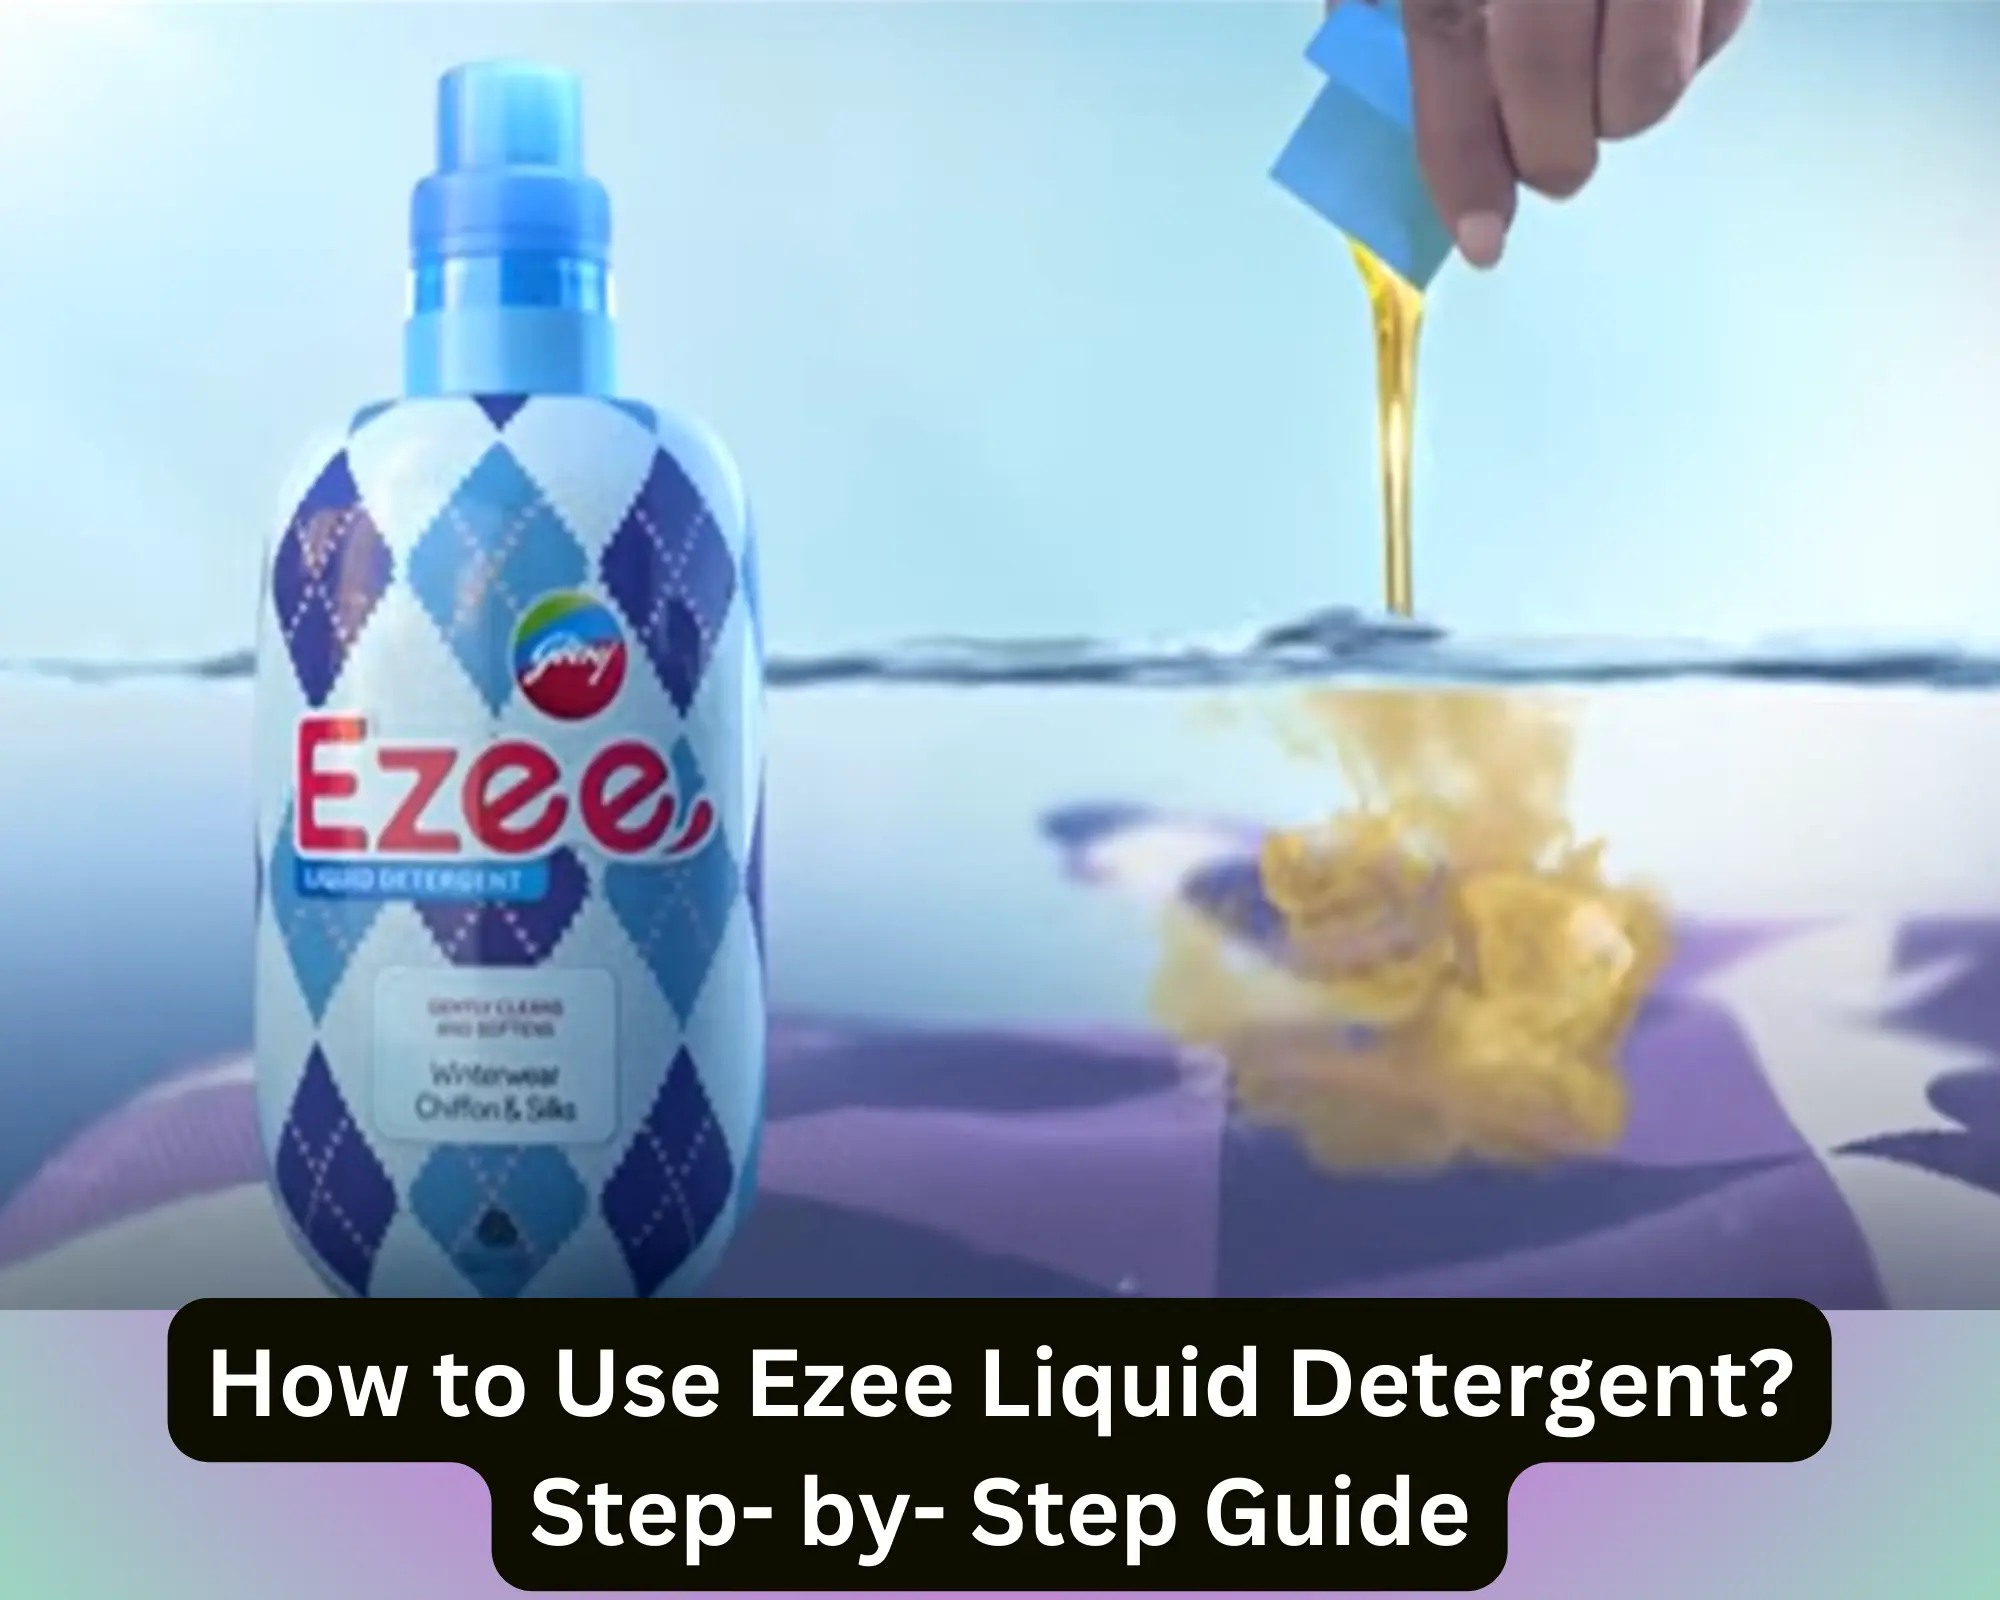 How to Use Ezee Liquid Detergent?